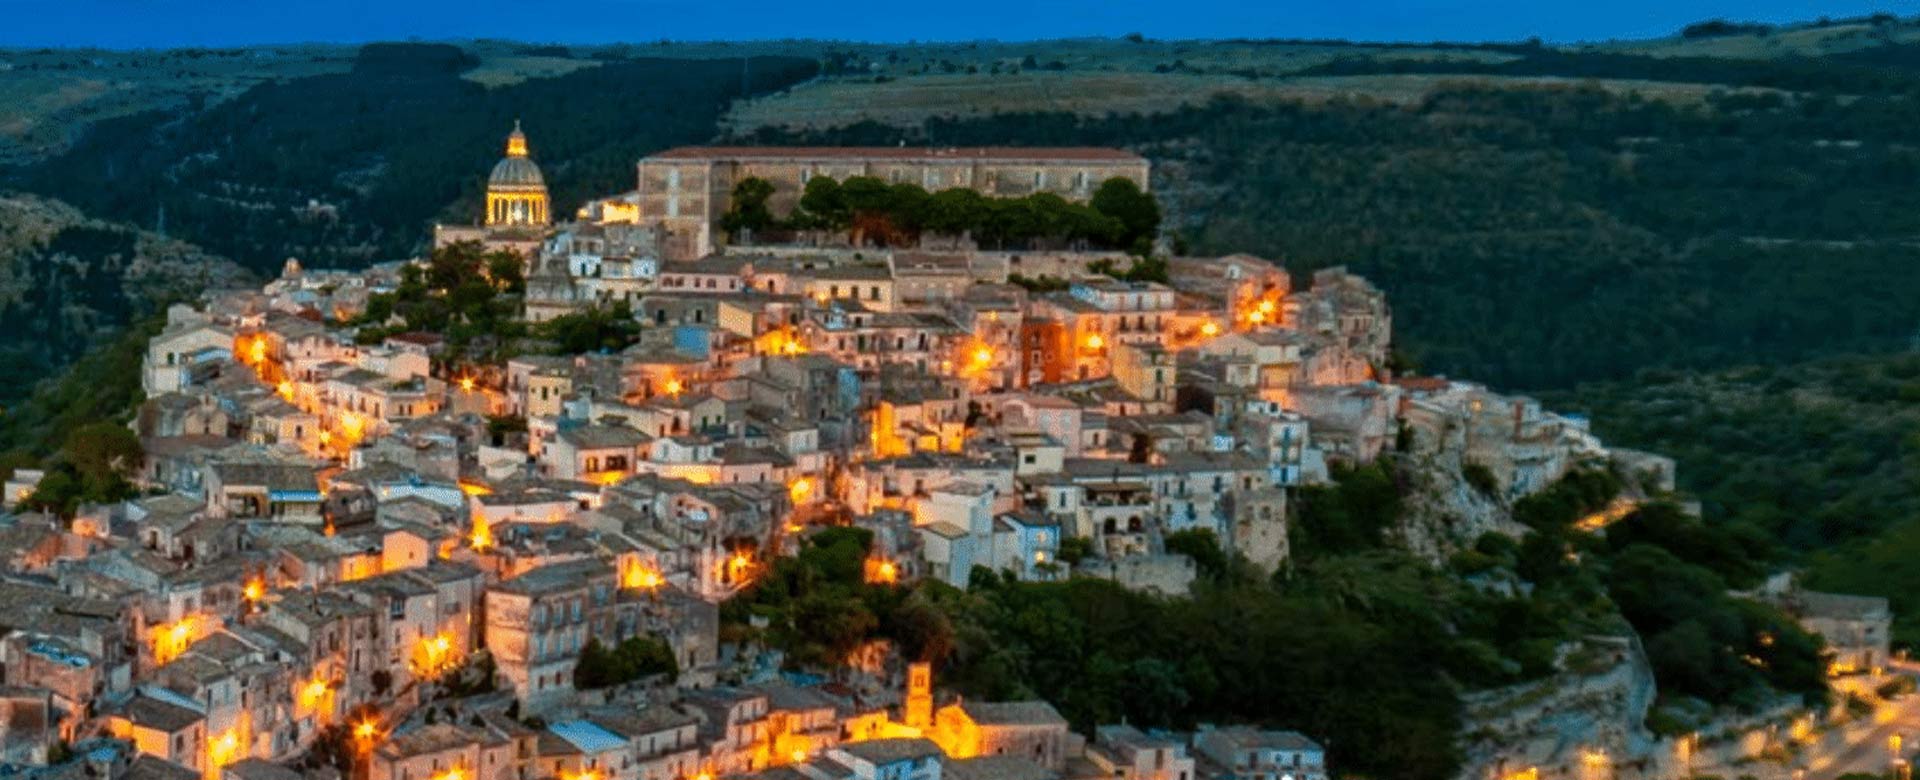 Vista di Ragusa dall'alto - Esperienze di Sicilia, Birra Messina e Associazione Italiana Giovani per l'Unesco